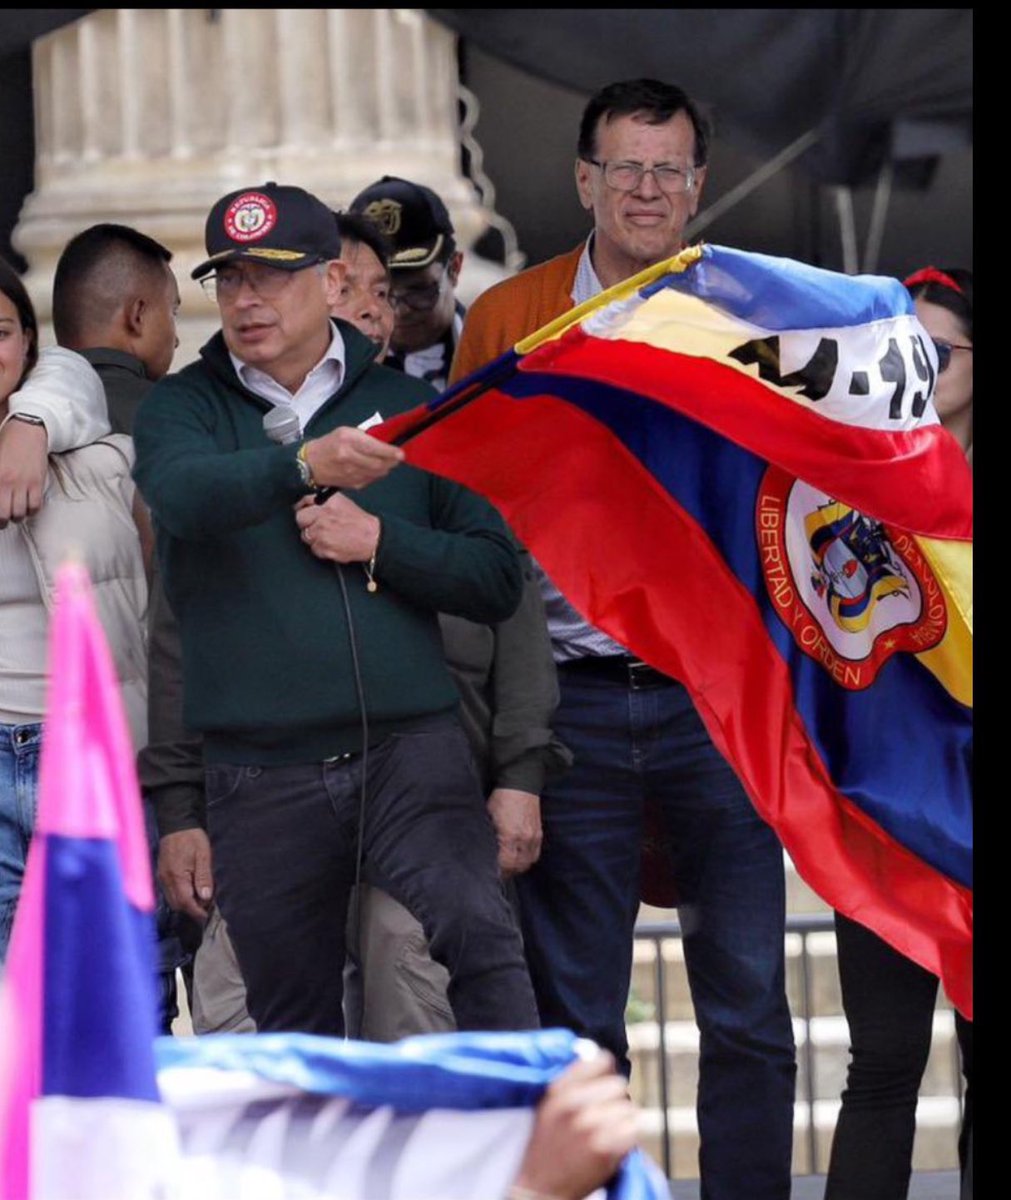 Condeno enérgicamente el acto irresponsable y provocador del presidente de Colombia, Petro, al enarbolar la bandera del grupo terrorista M 19. Es una acción que no solo ofende al pueblo colombiano, sino que demuestra lo peligrosa que puede ser la Izquierda. Comunismo nunca más..!